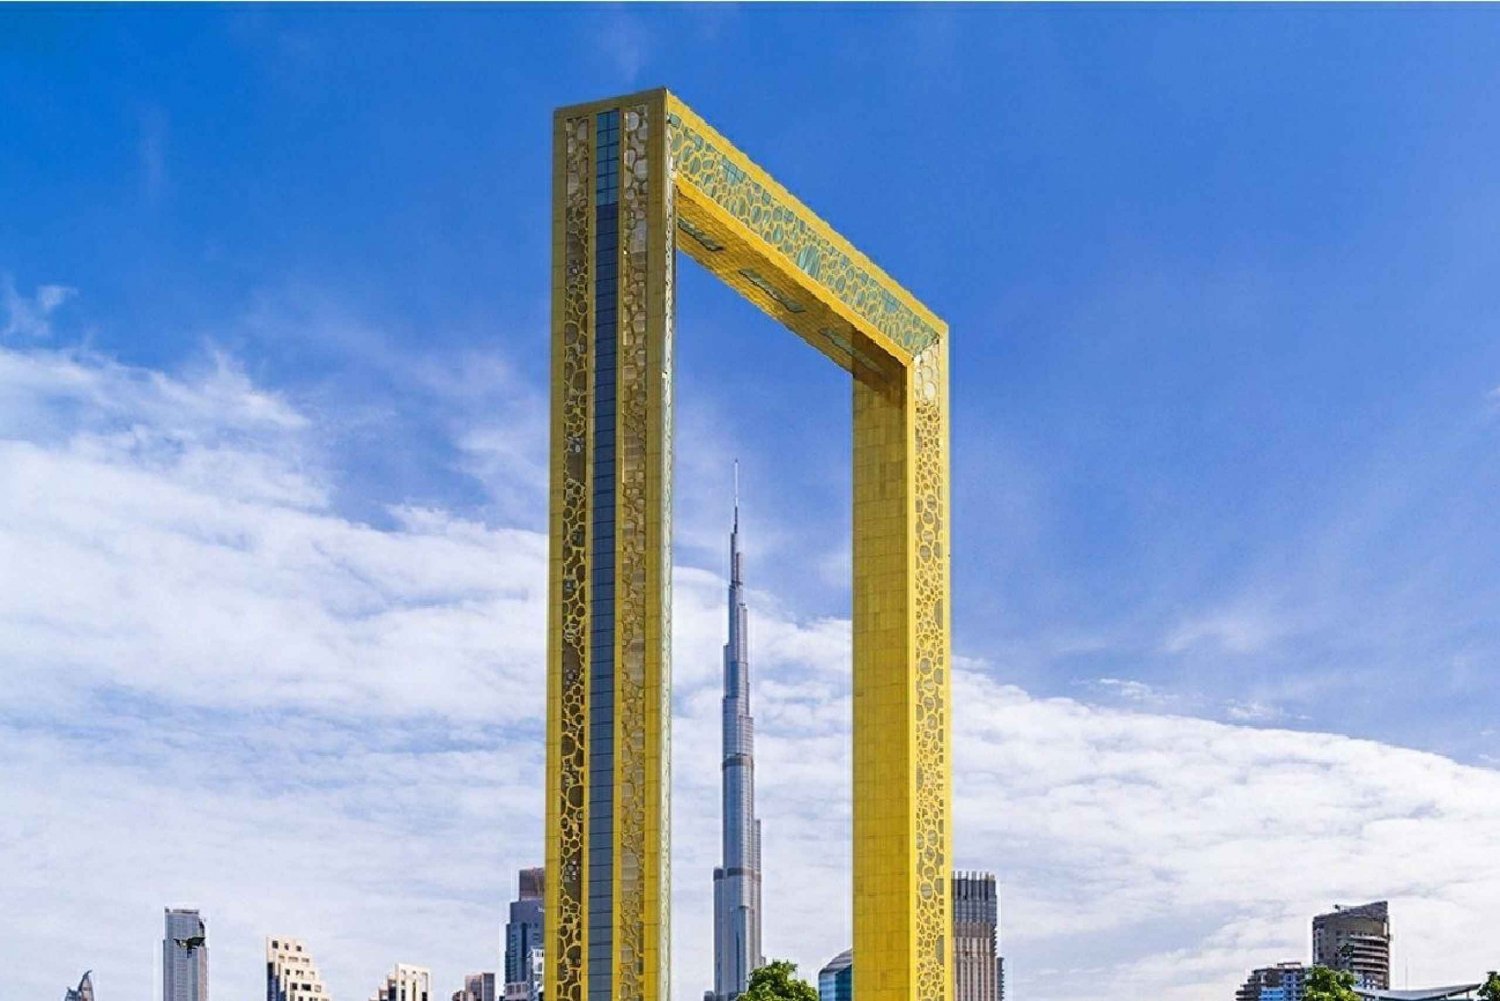 Dubai: City Highlights Tour particular de escala com traslado